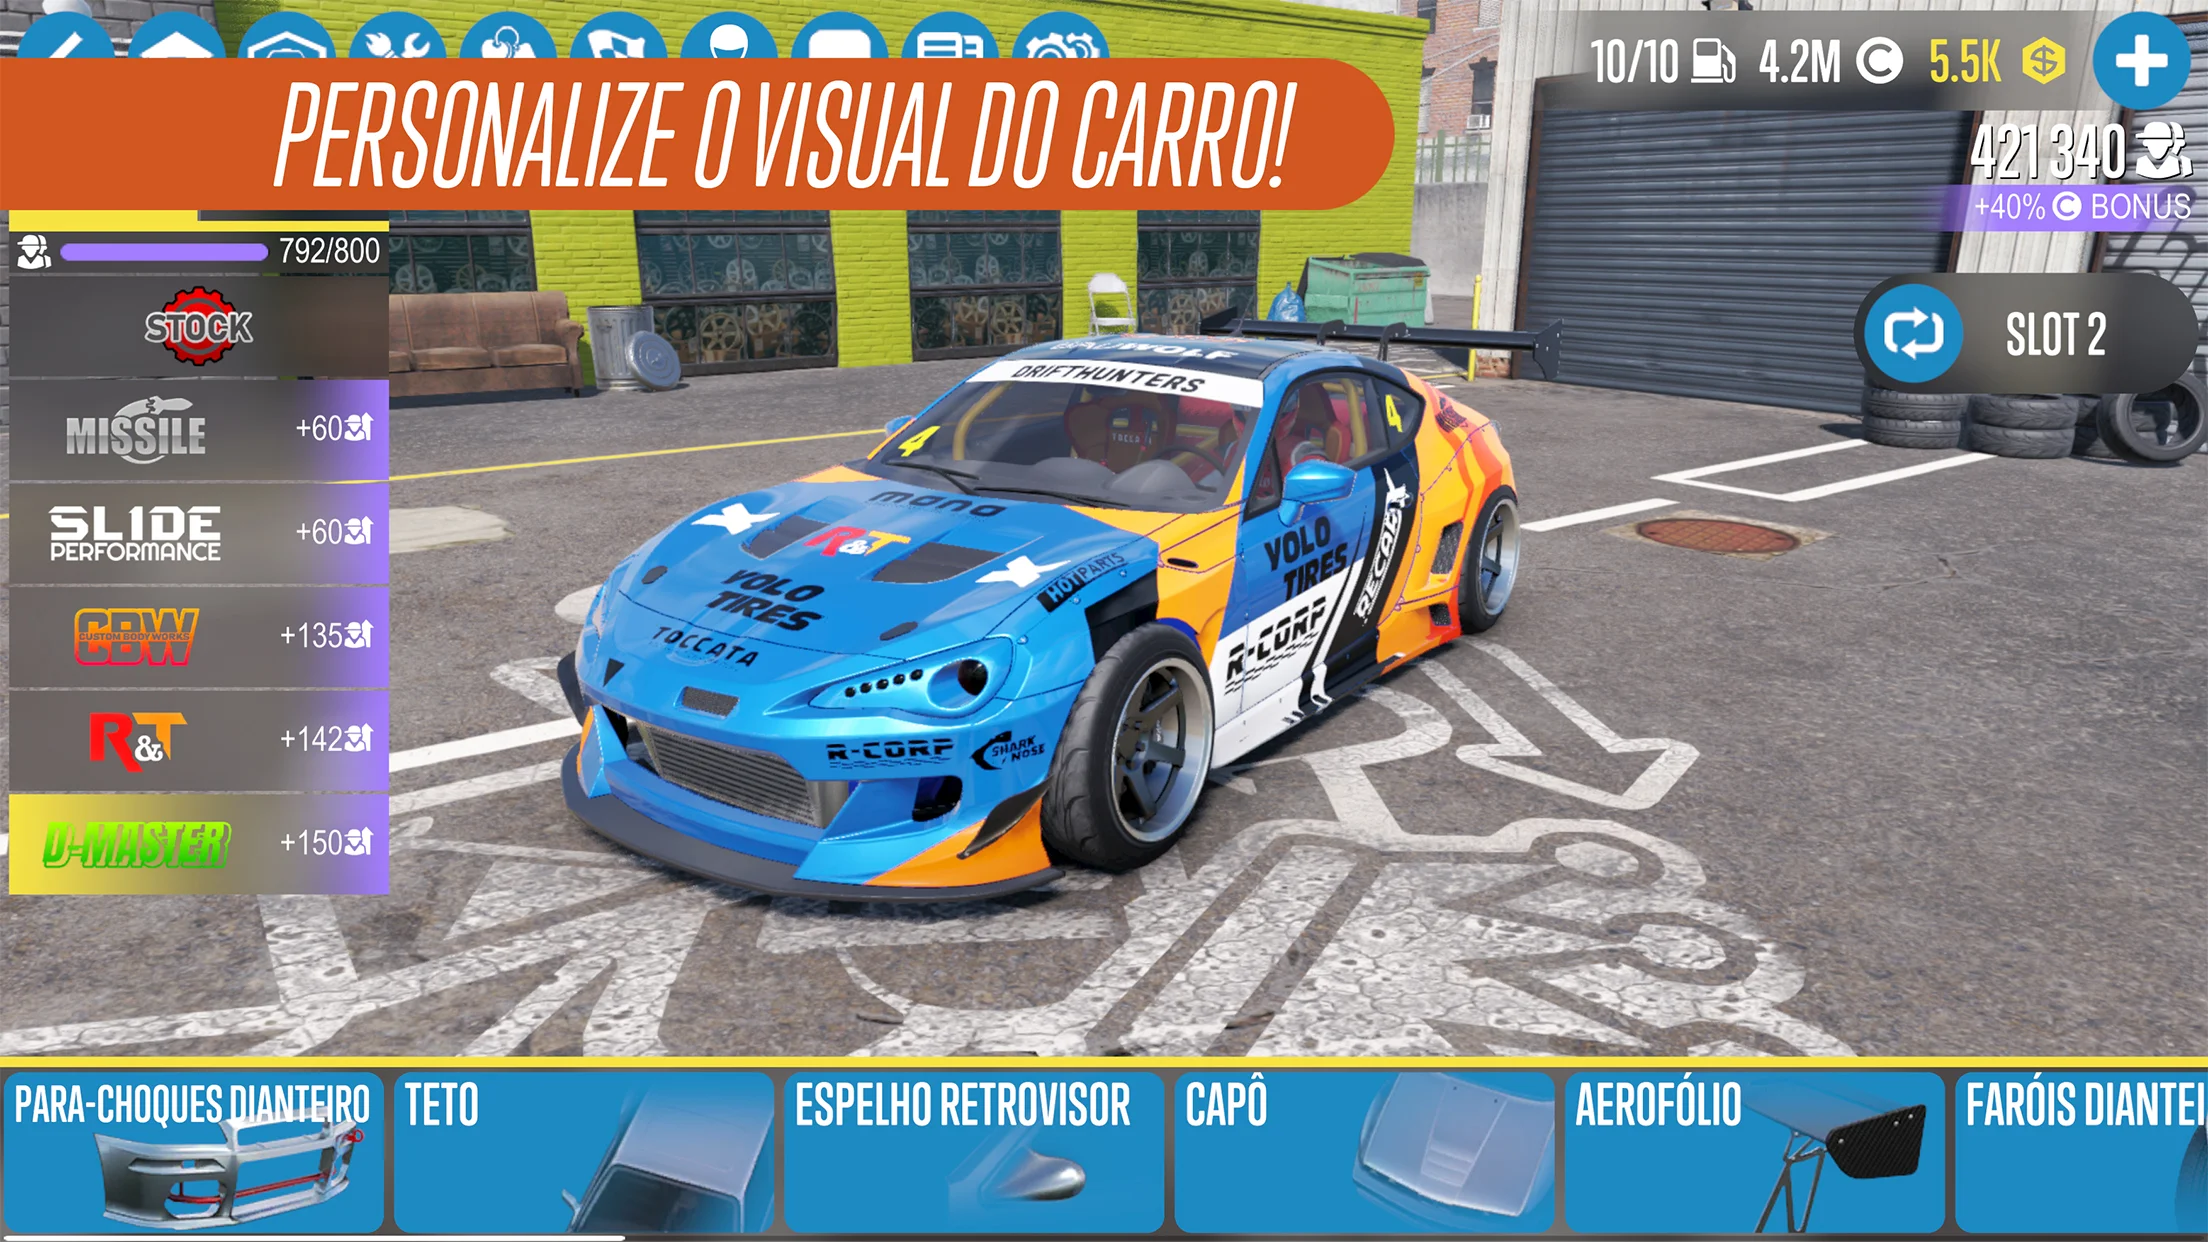 CarX Drifit Racing 2 Mod Dinheiro Infinito V 1.20.2 Atualizado 2022 